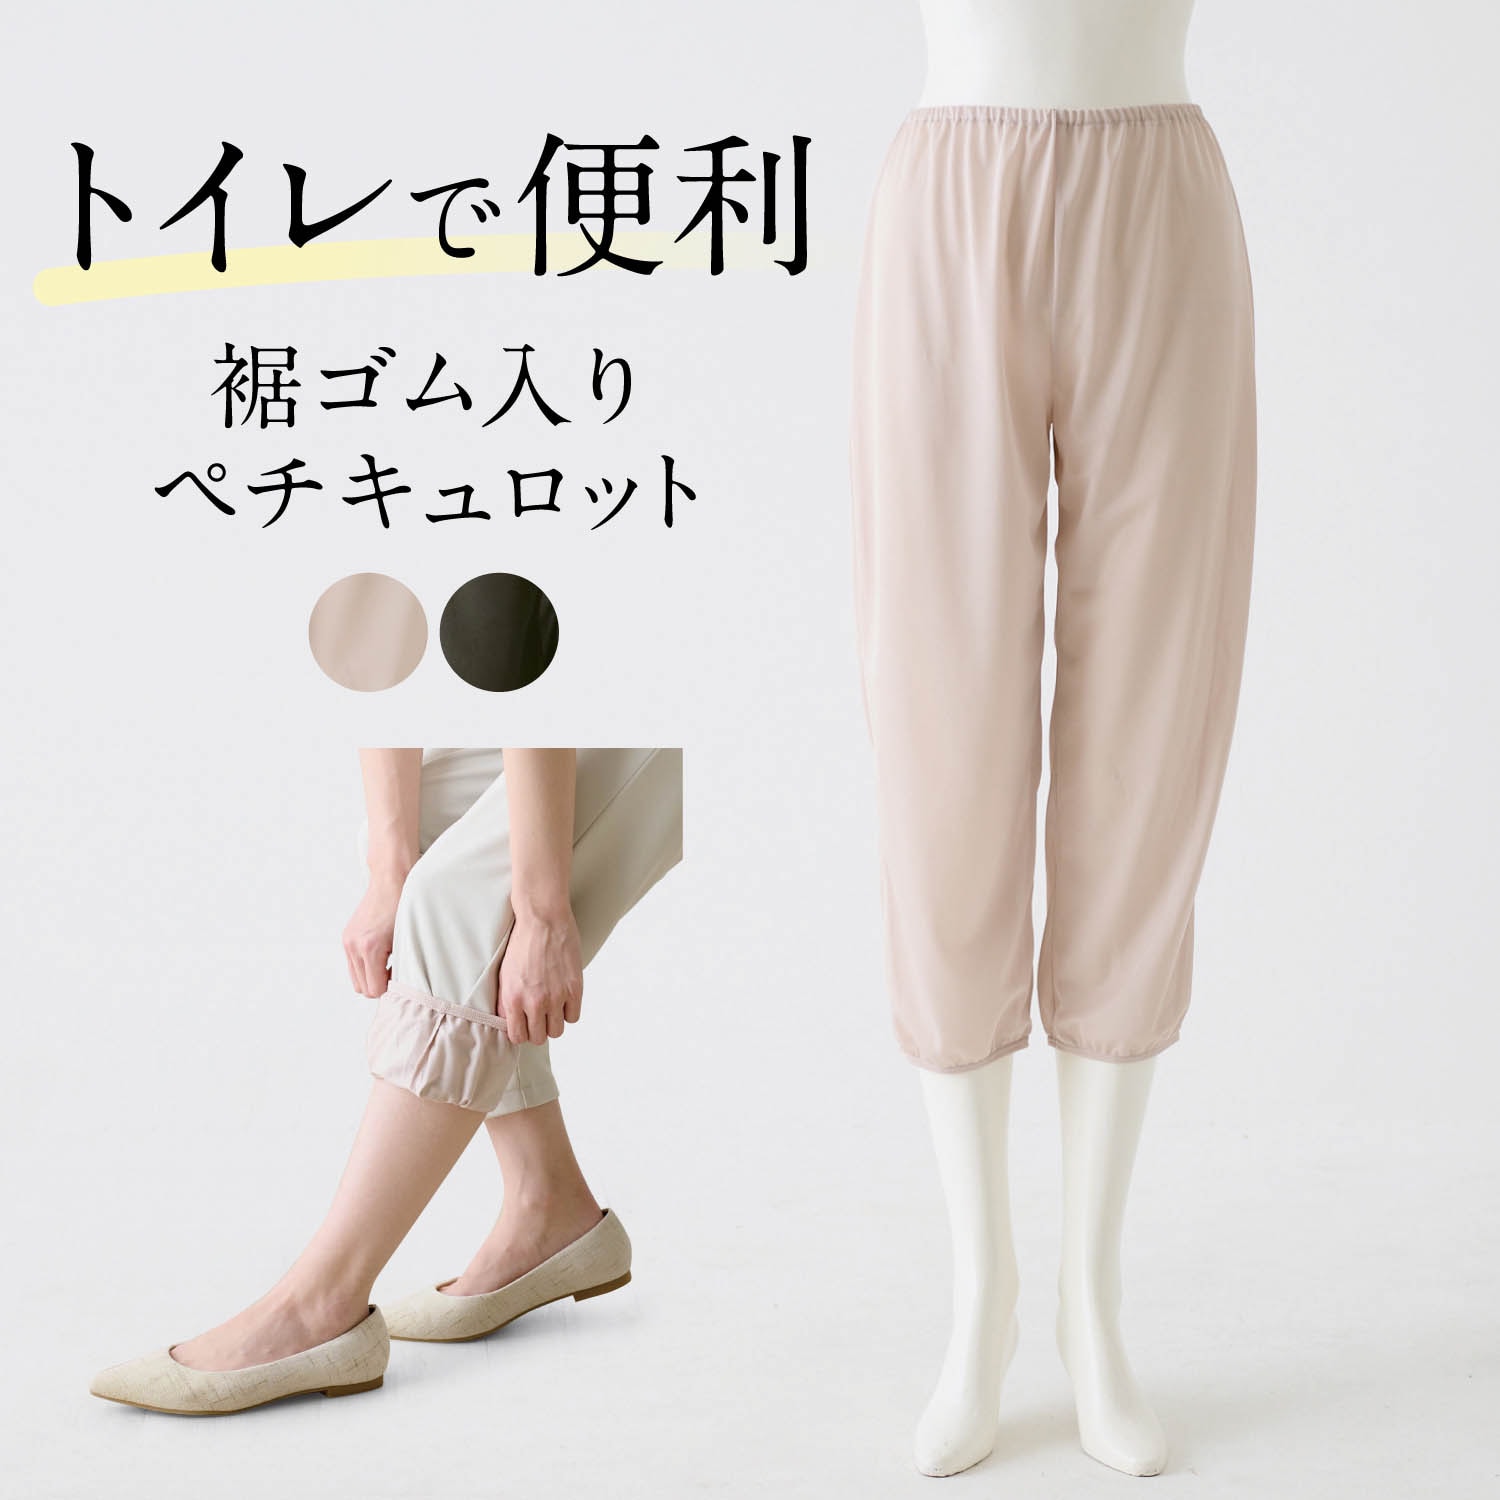 【ベルメゾン】裾ゴム入りぺチキュロット(80cm丈)